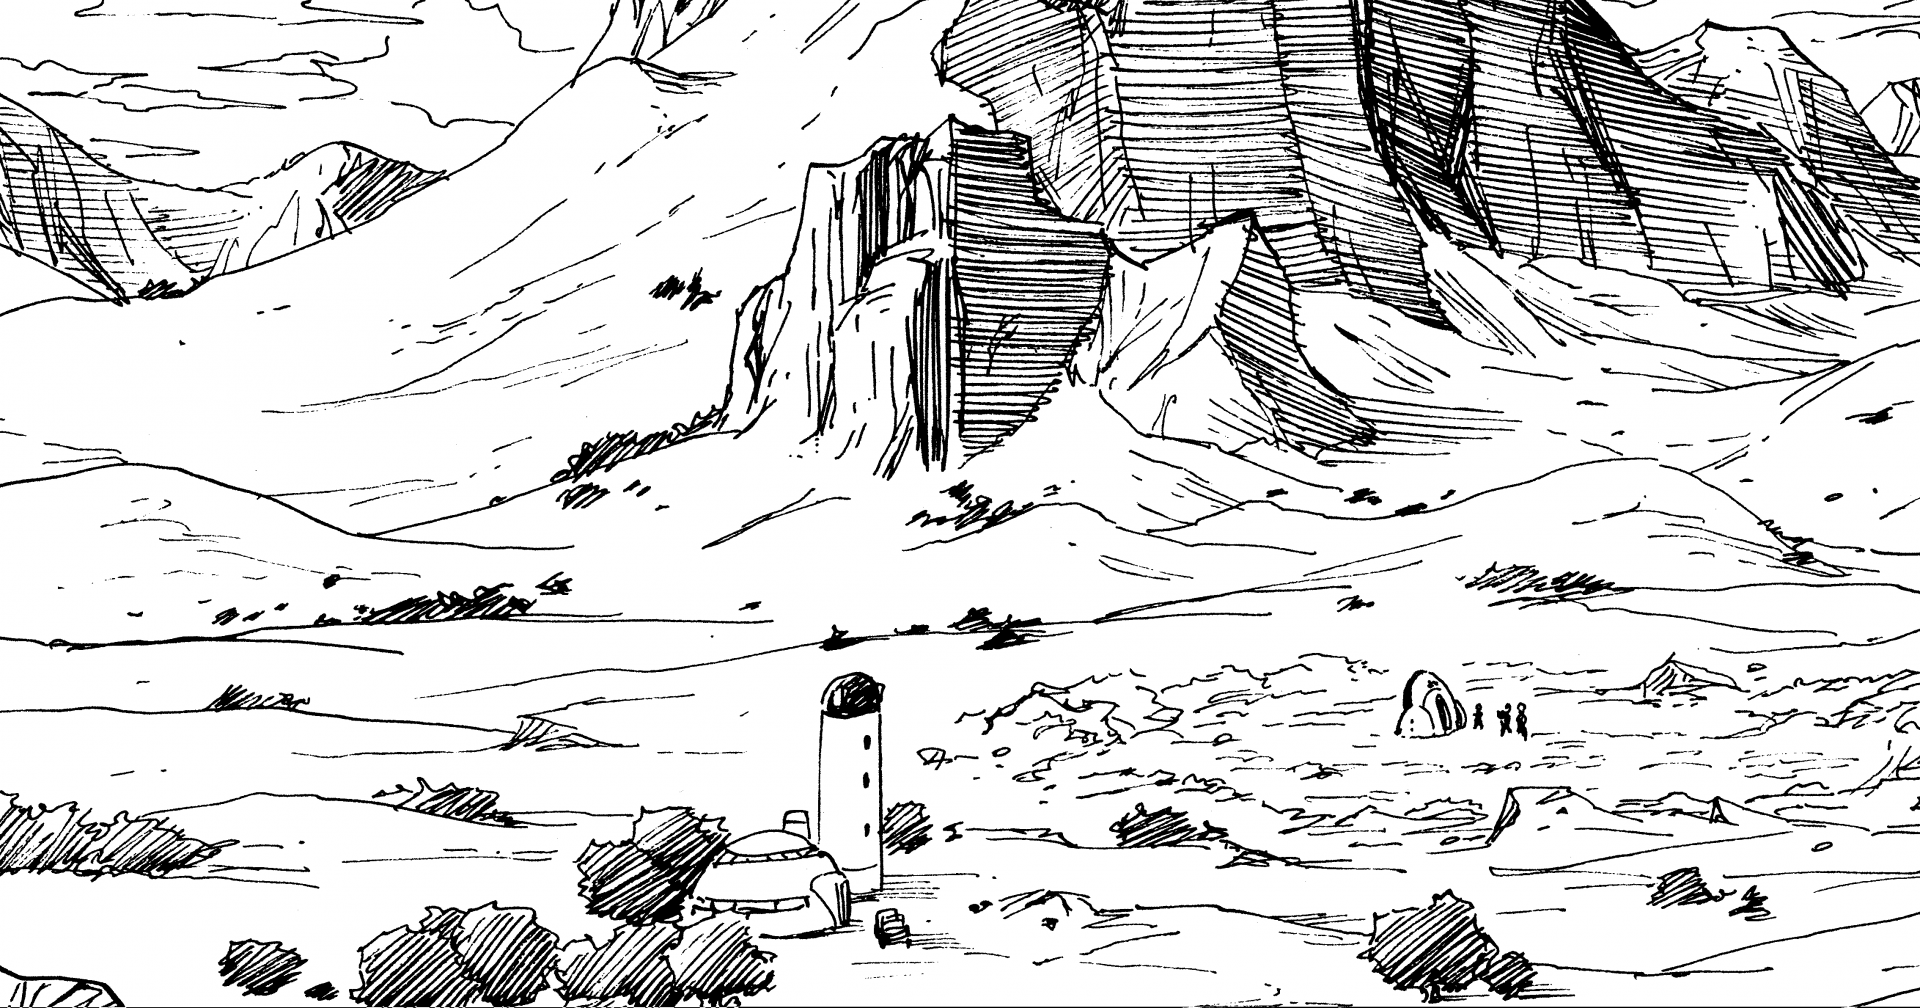 〜 Investigación en profundidad sobre el manga de Dragon Ball: Archivo # 016 Diario de viaje mundial: La Spaceship oculta de Babidi